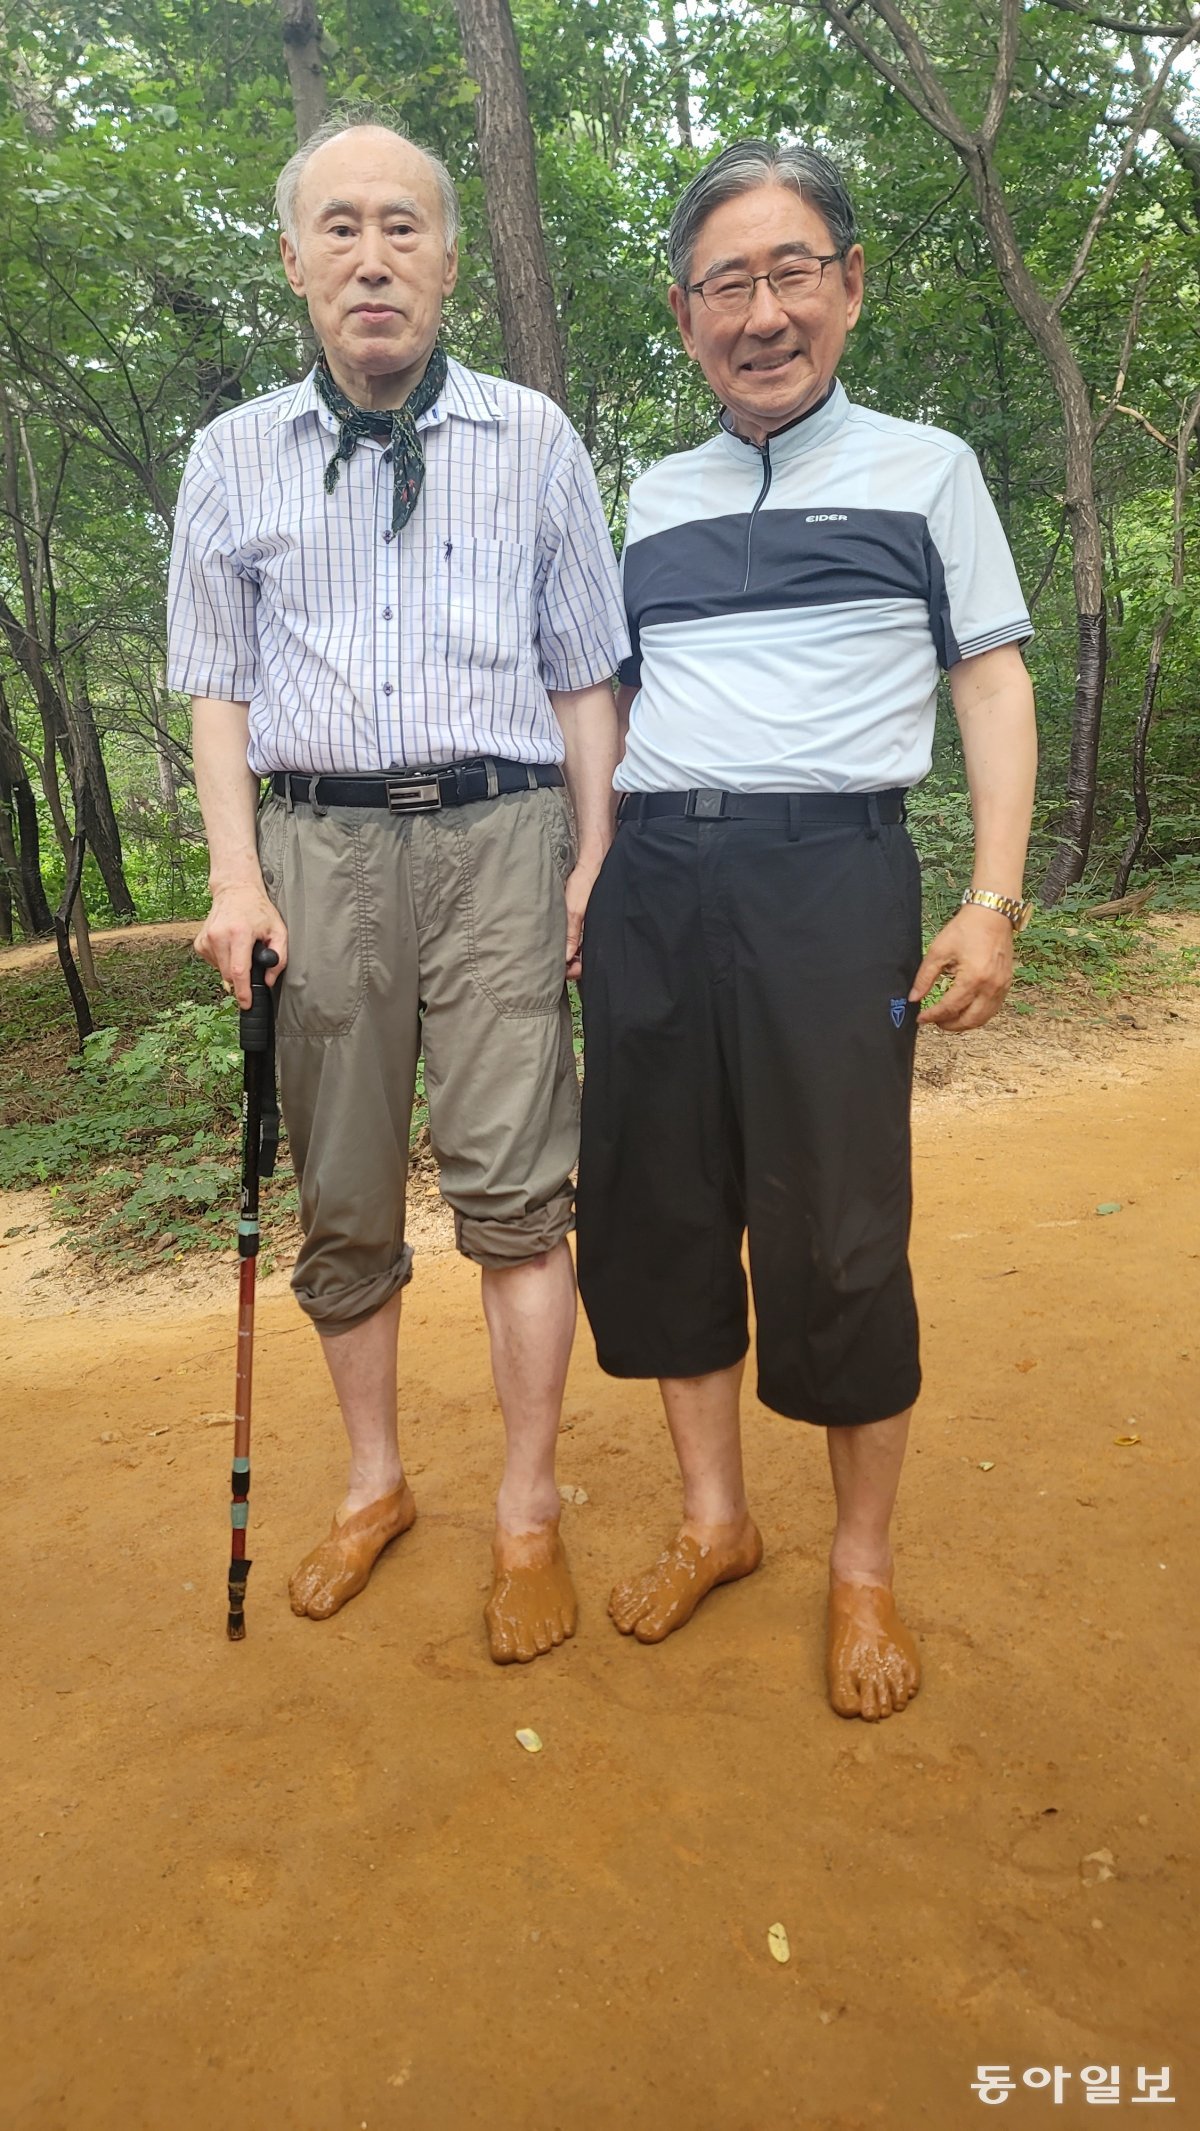 이강일 이사장(왼쪽)과 박동창 회장이 인천 연수구 청량산에서 맨발로 포즈를 취했다. 맨발걷기국민운동분부 인천연수구지회 제공.